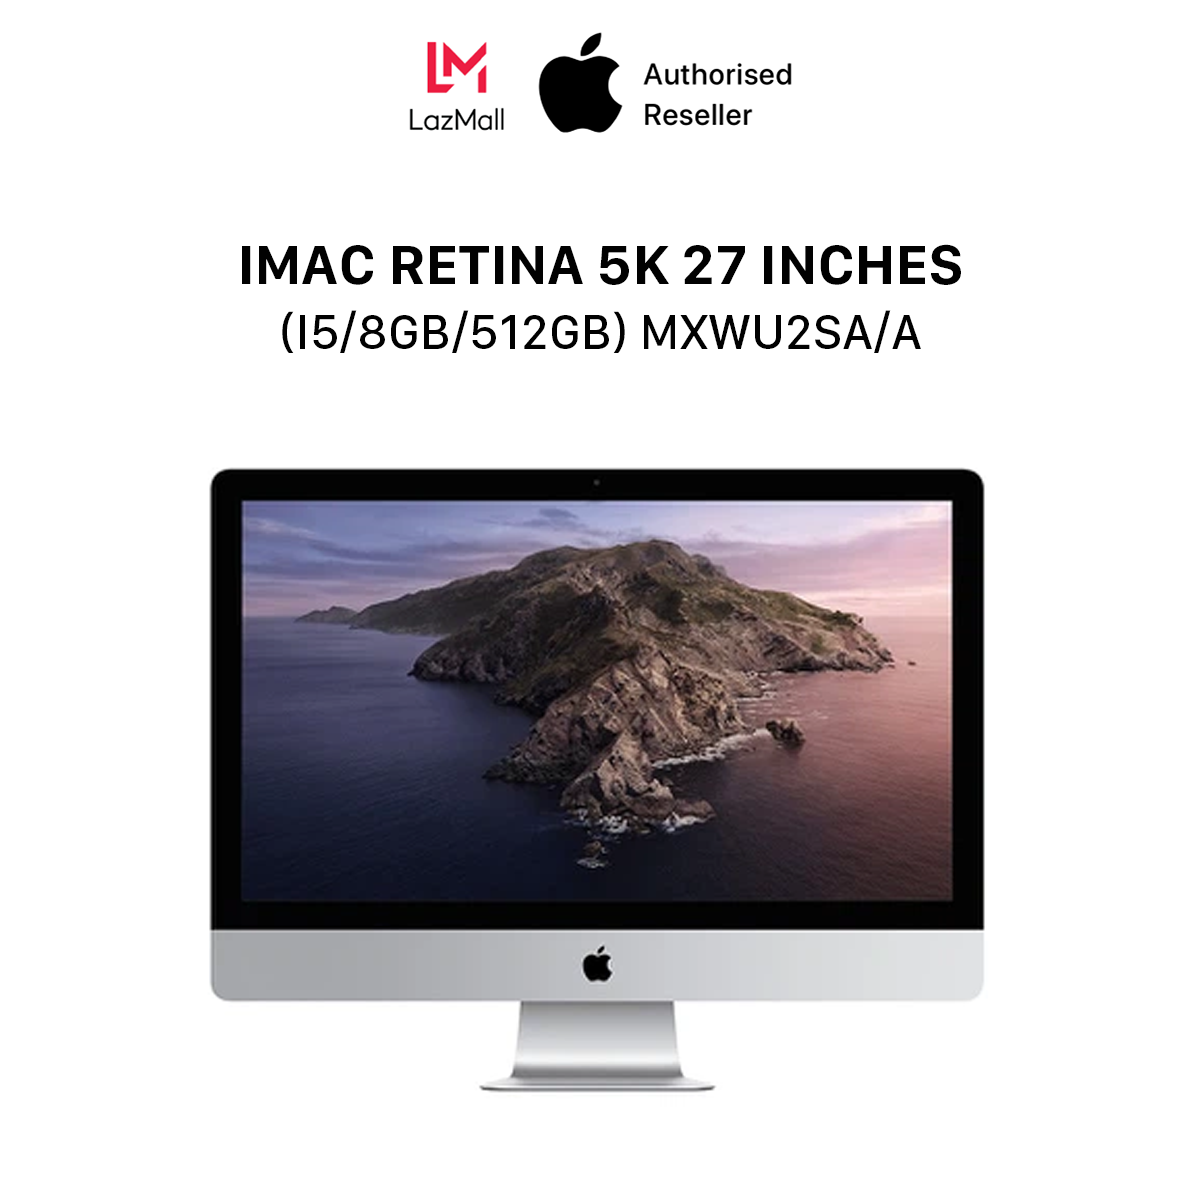 iMac Retina 5K (5120x2880) 27 inches (i5 6-core / 3.3GHz Turbo Boost up to 4.8GHz / 8GB / 512GB) l MXWU2SA/A l HÀNG CHÍNH HÃNG